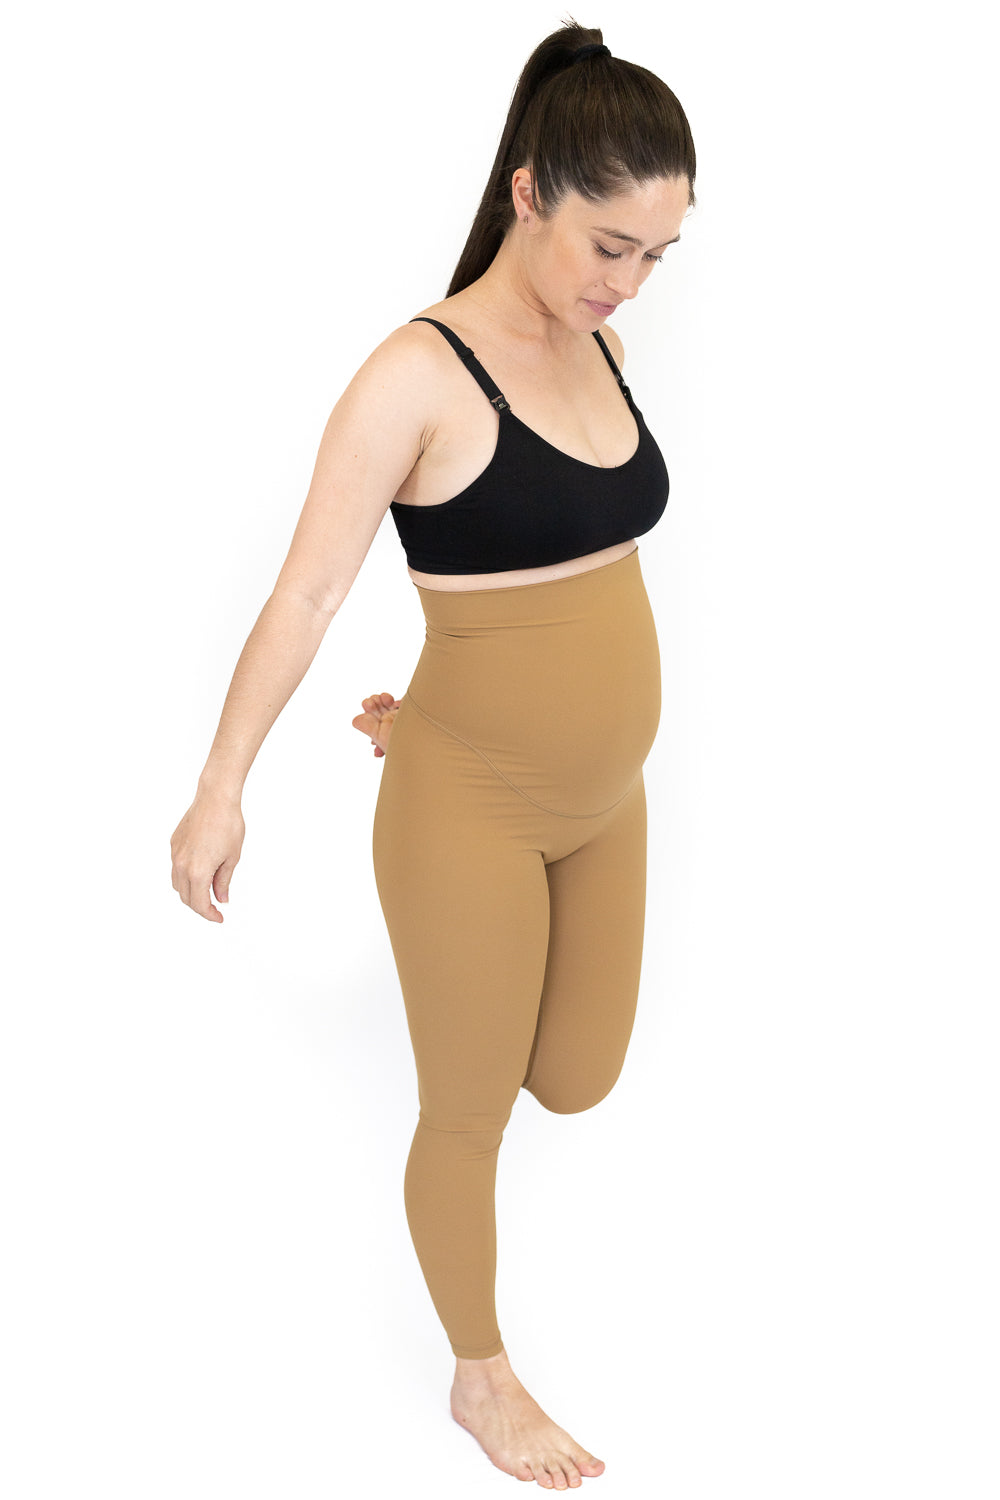 Emama Maternity Leggings - Caramel - Full Length-FINAL SALE ONLY